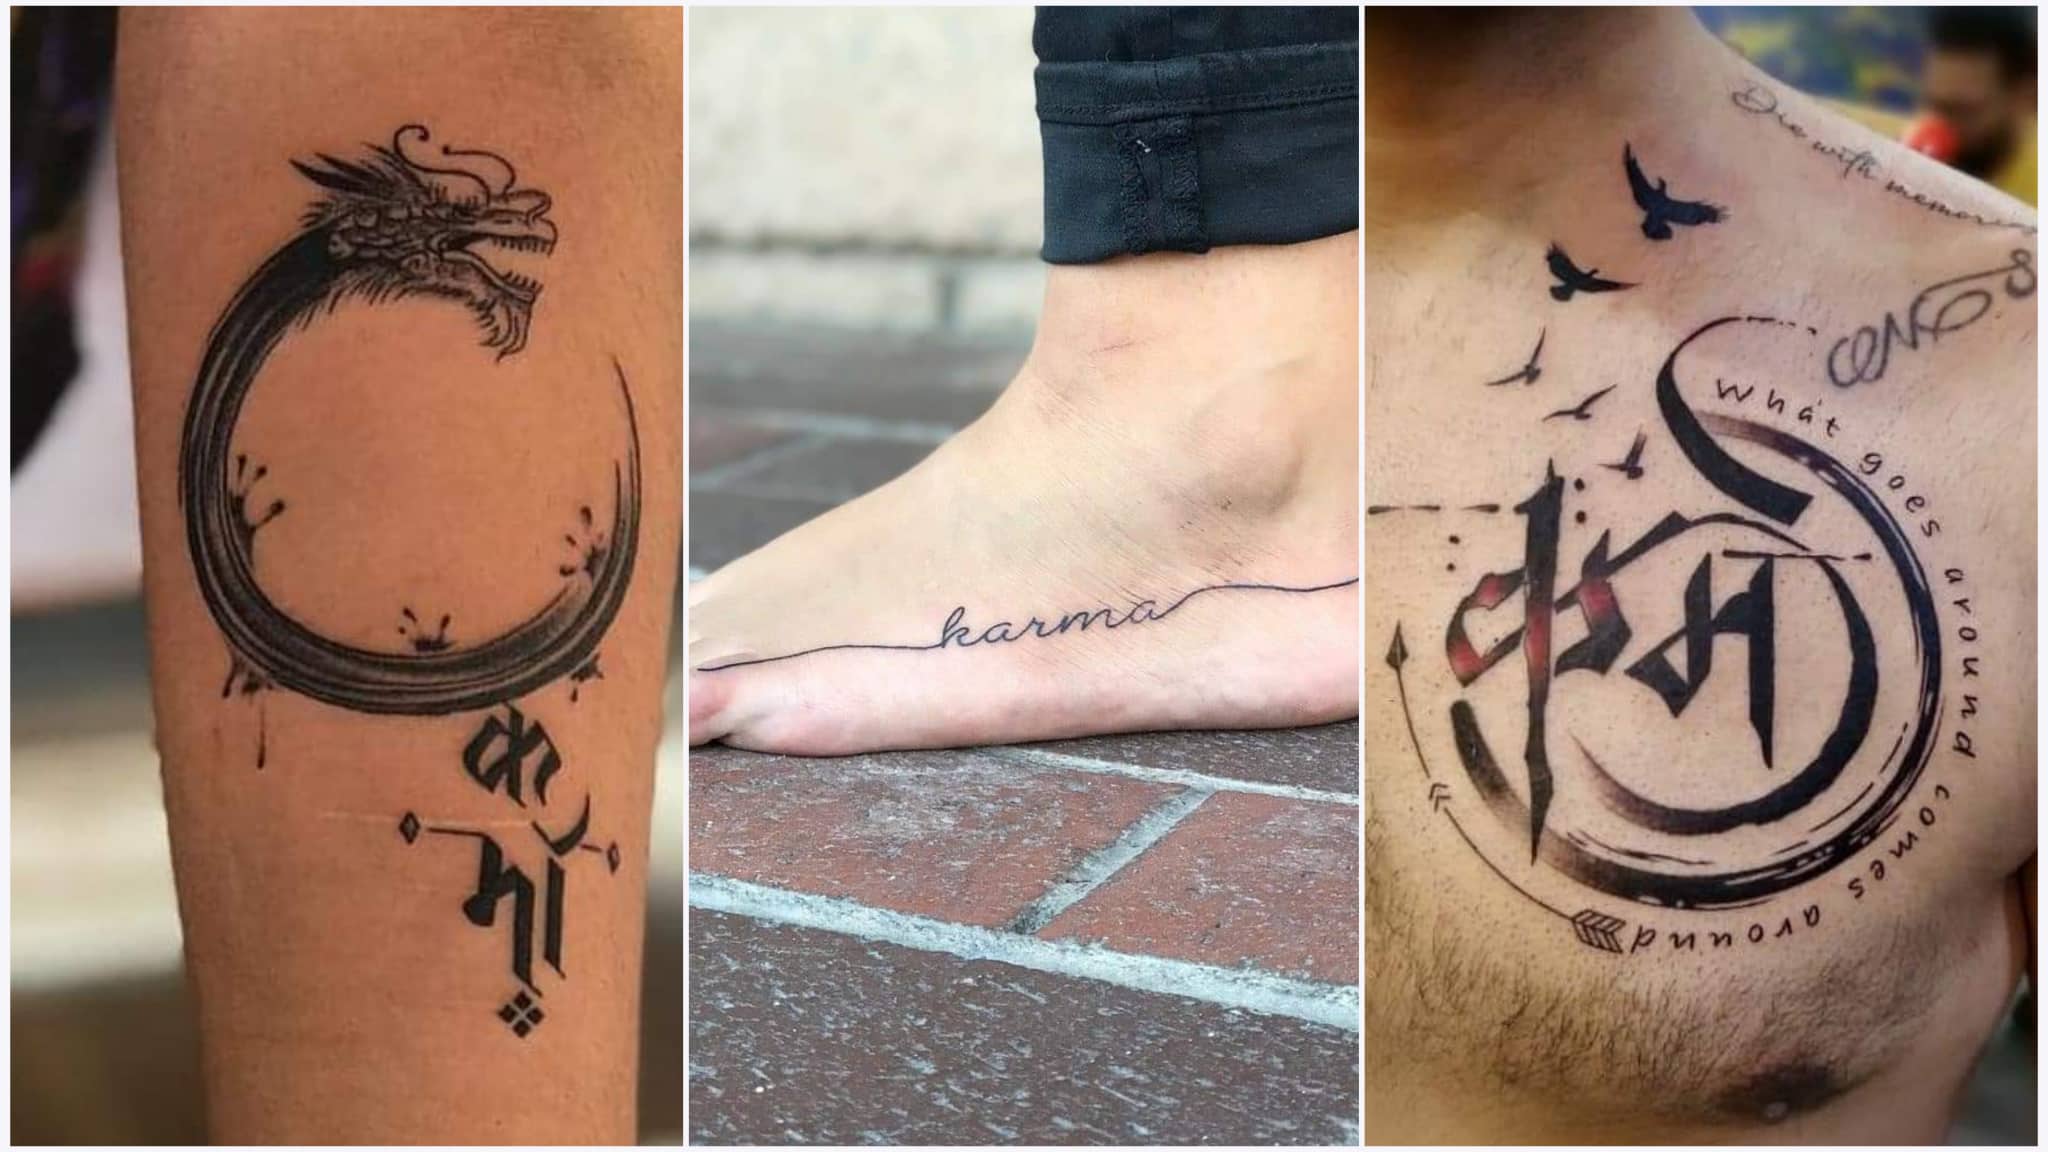 Karma tattoo design